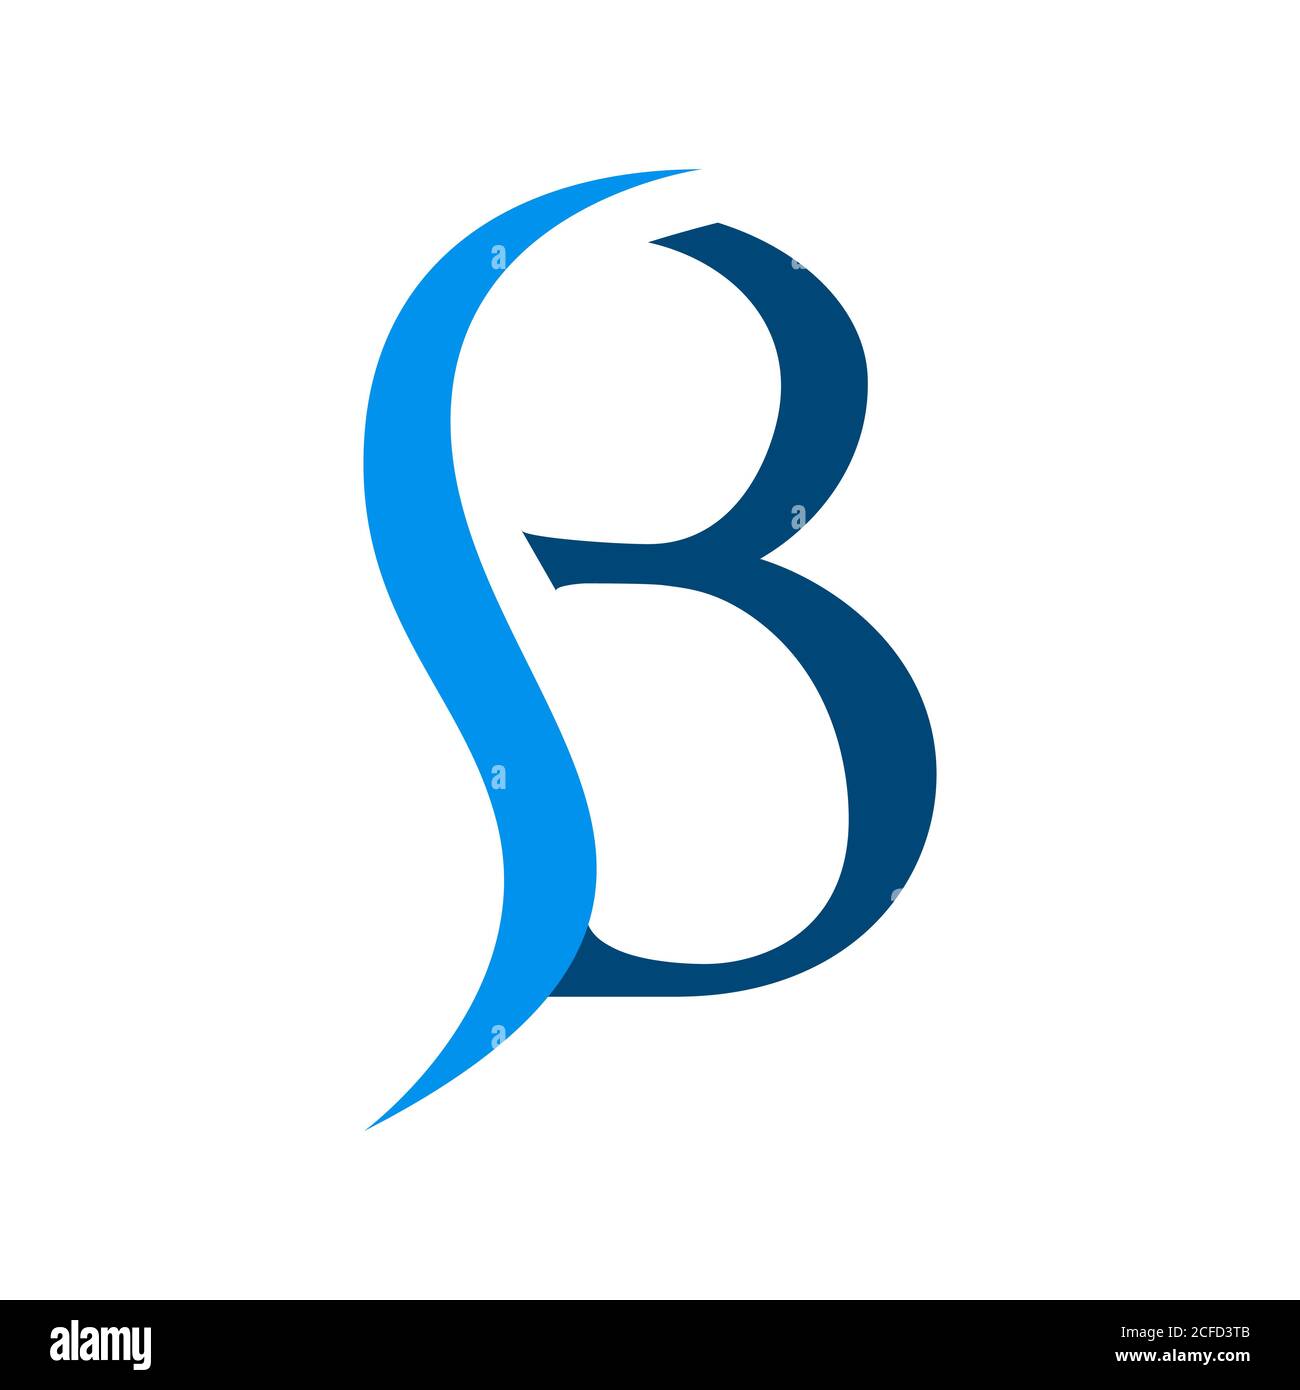 Moderner Ansatz Wasser und anfängliche SB Letter Logo Design Vektor Grafische Konzeptillustrationen Stock Vektor